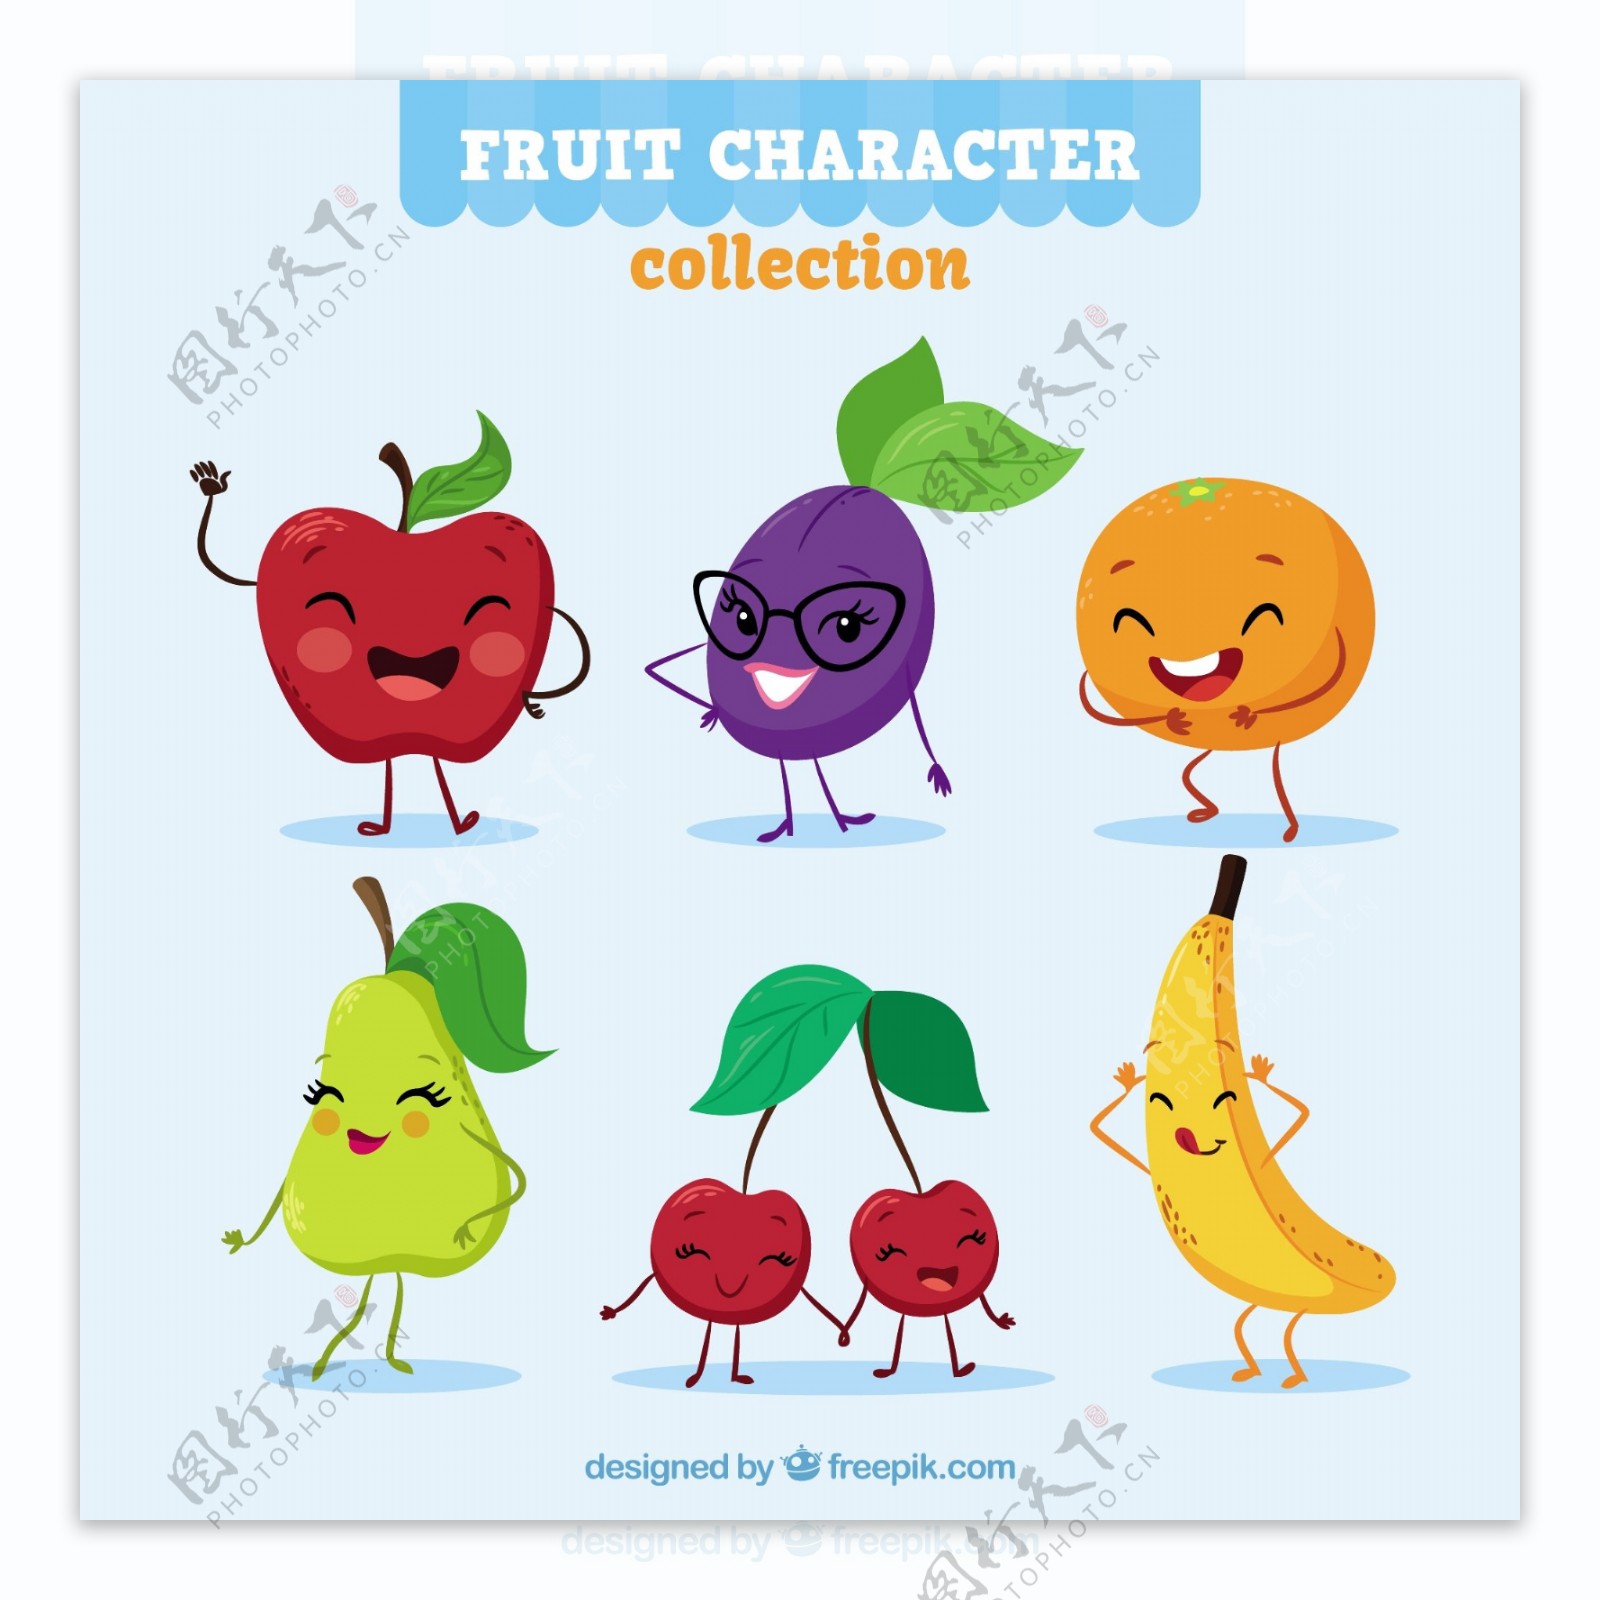 有趣的水果人物表情图标